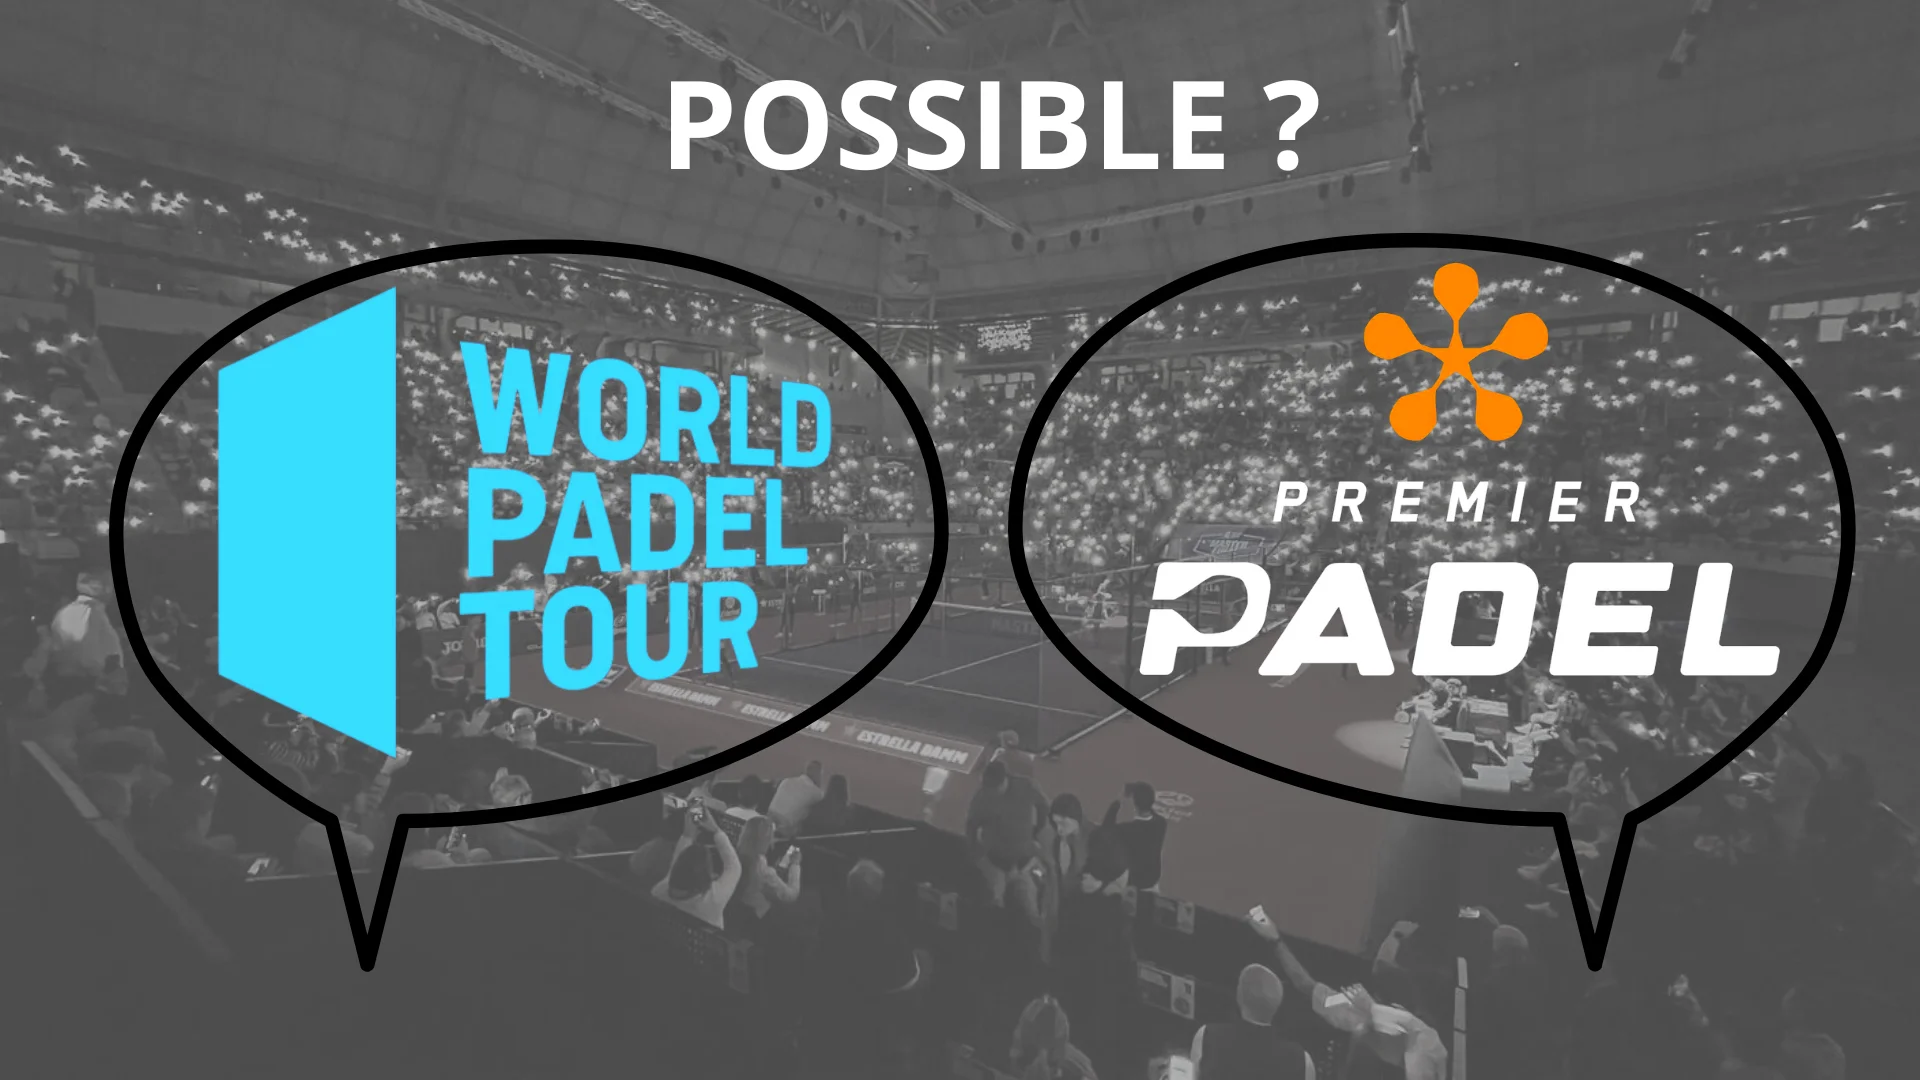 Le World Padel Tour formaliza sua discussão com a QSI